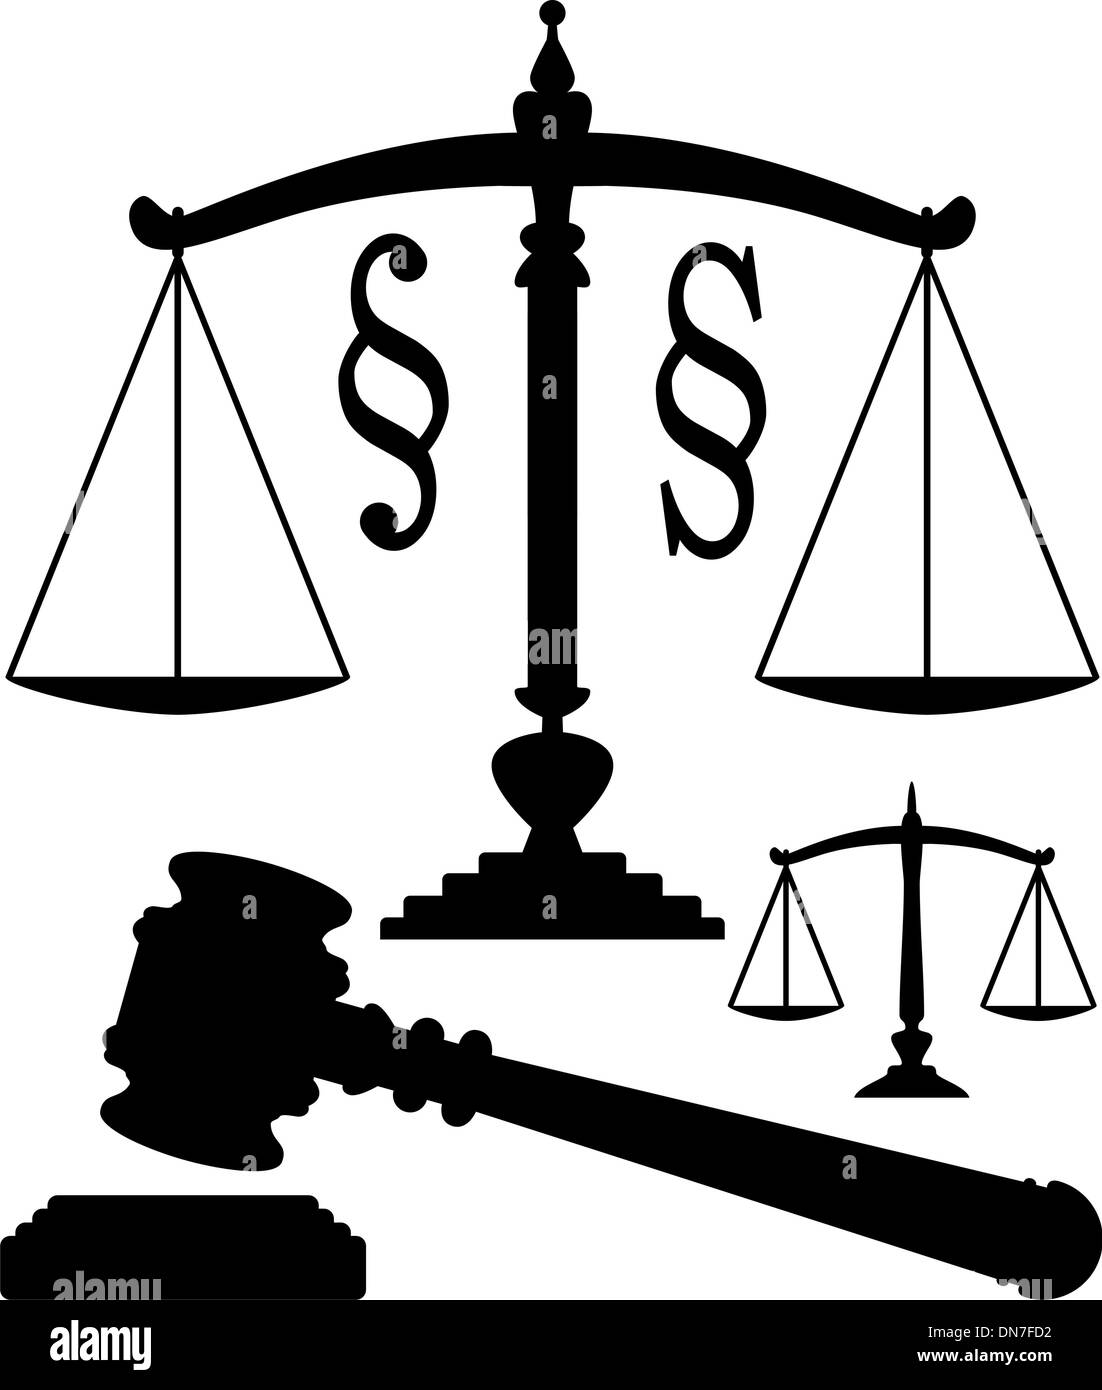 Vektor-Waage der Gerechtigkeit, Hammer und Absatz-Symbole Stock Vektor